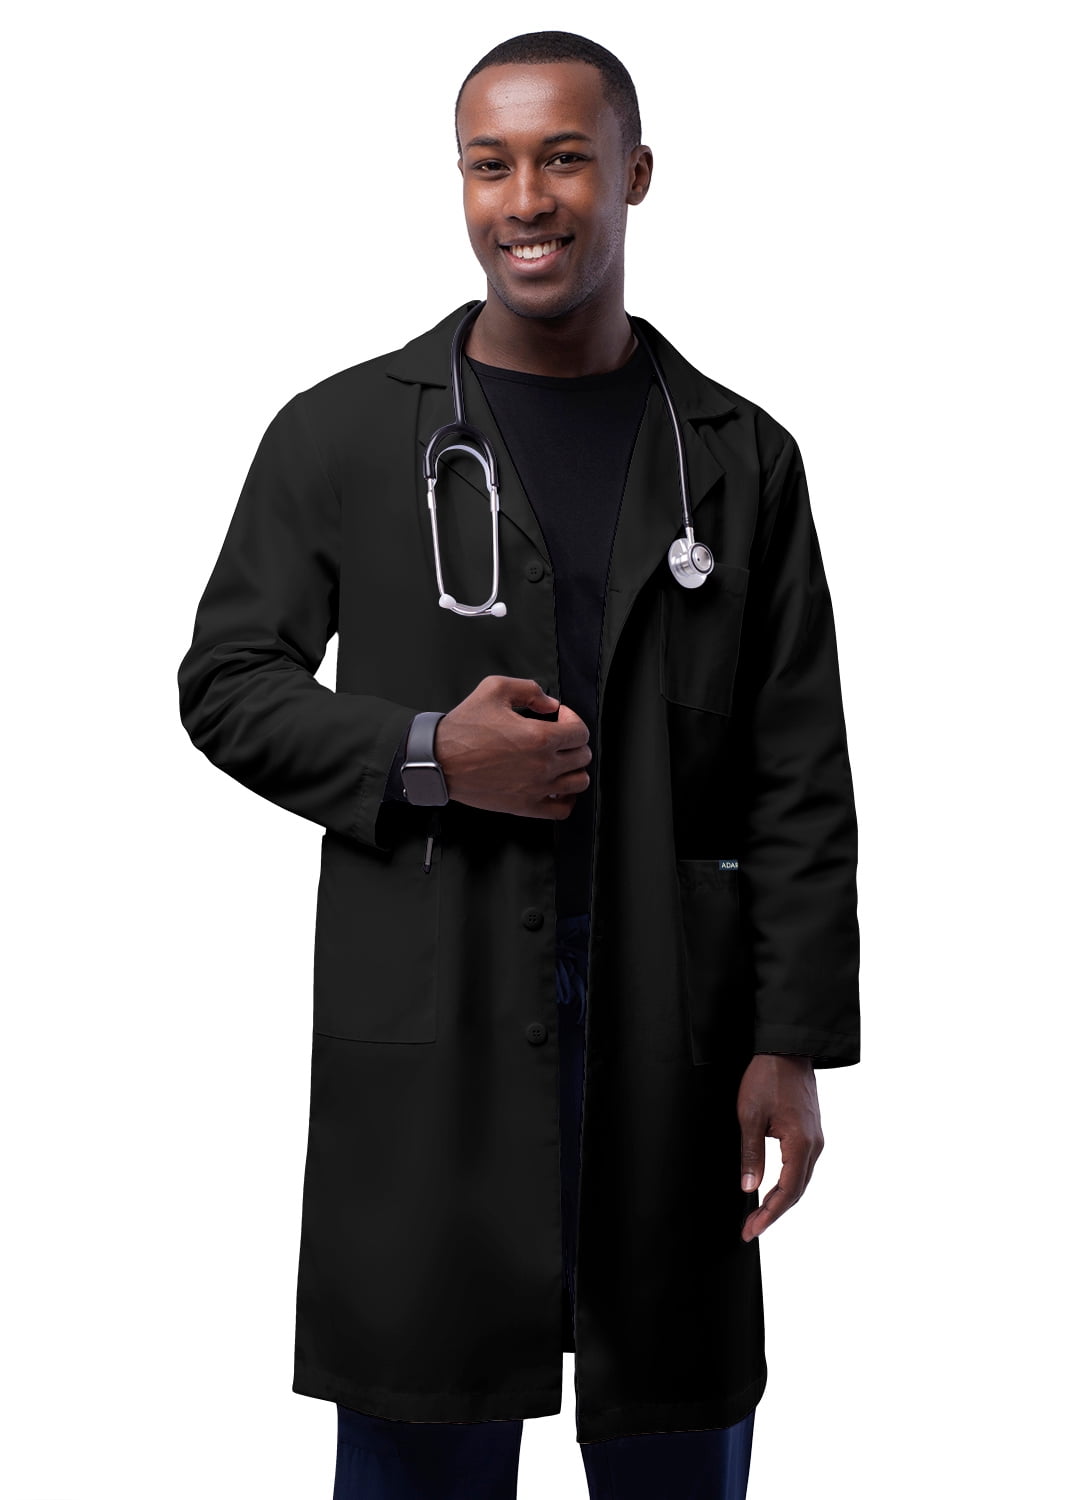 Best Medical Men L/S Lab Coat Snaps side Vent 3 Pocket 43" Length Burgundy Sz 4X 